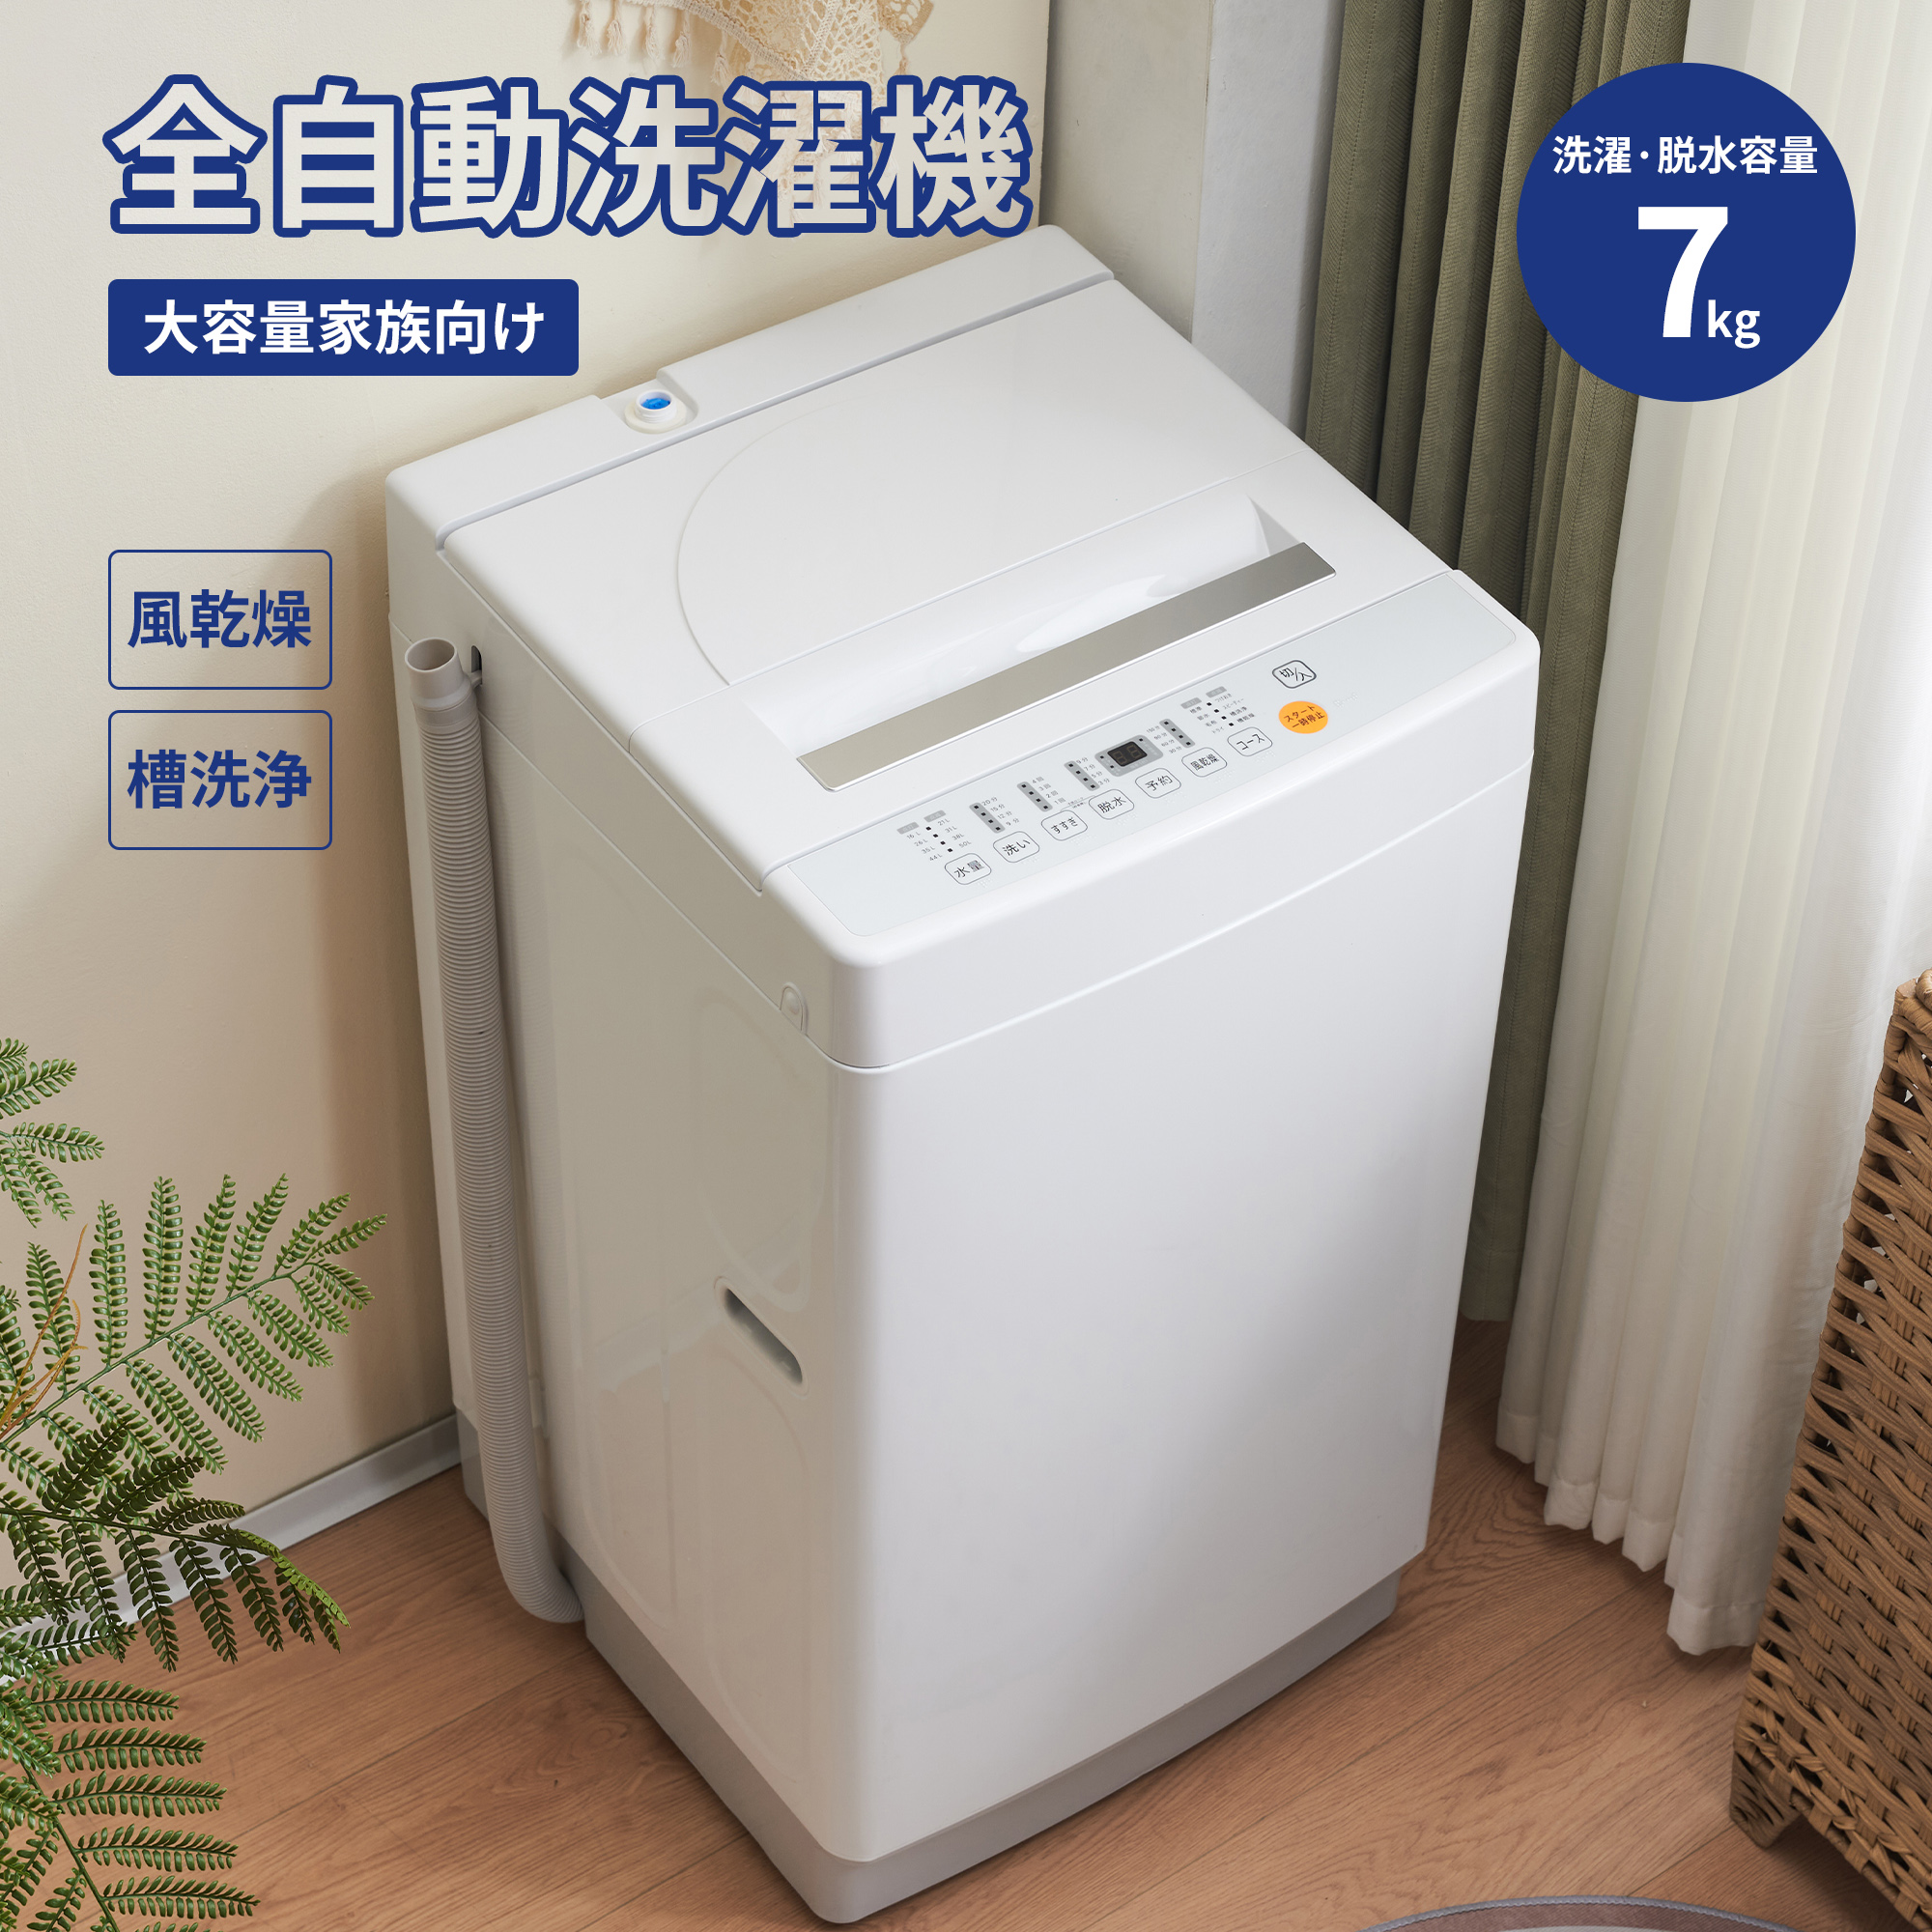 【楽天市場】洗濯機 全自動洗濯機 7kg 縦型 7キロ キレイ タイマー 